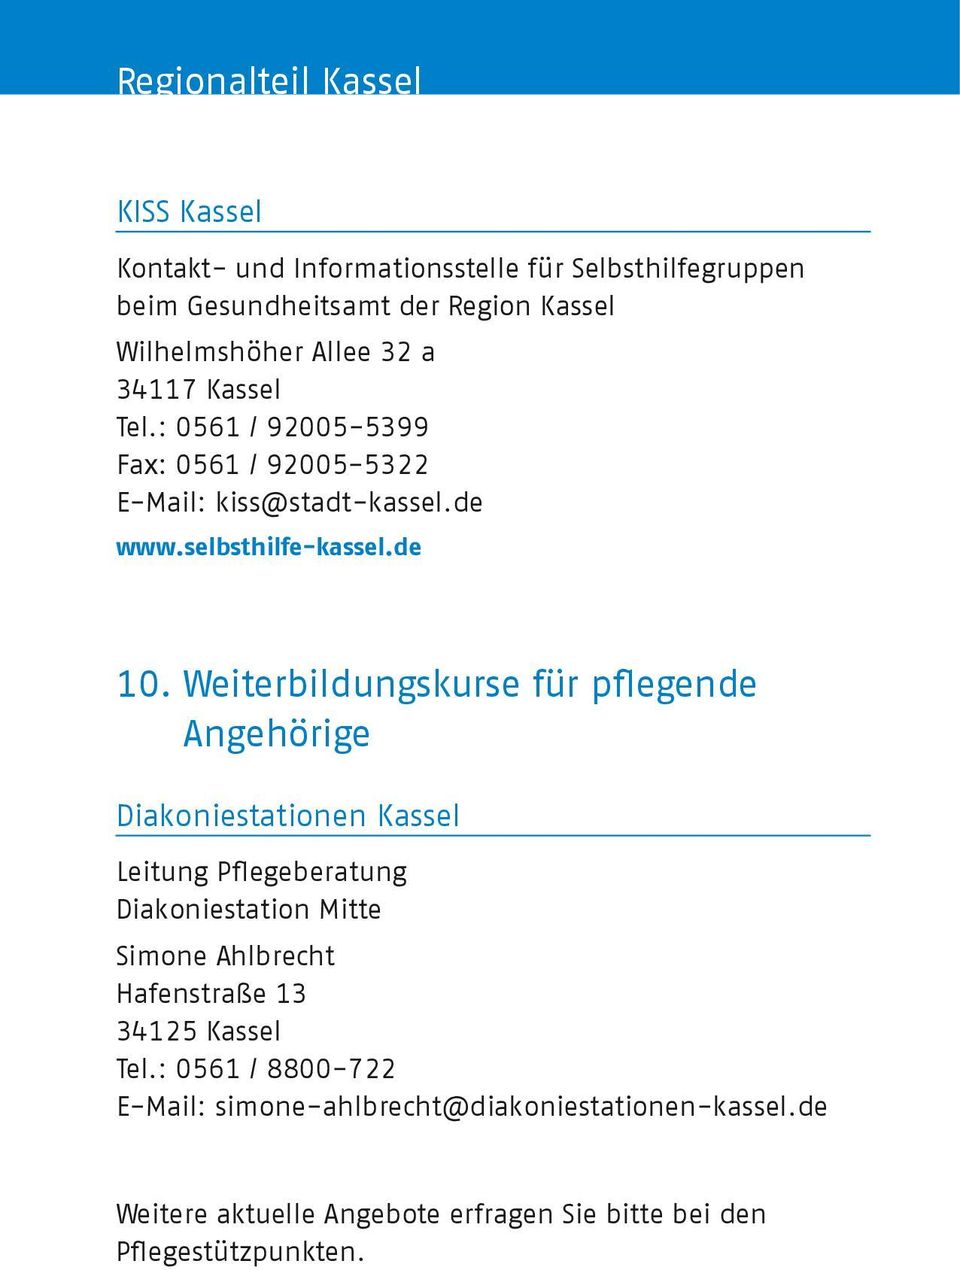 Weiterbildungskurse für pflegende Angehörige Diakoniestationen Kassel Leitung Pflegeberatung Diakoniestation Mitte Simone Ahlbrecht